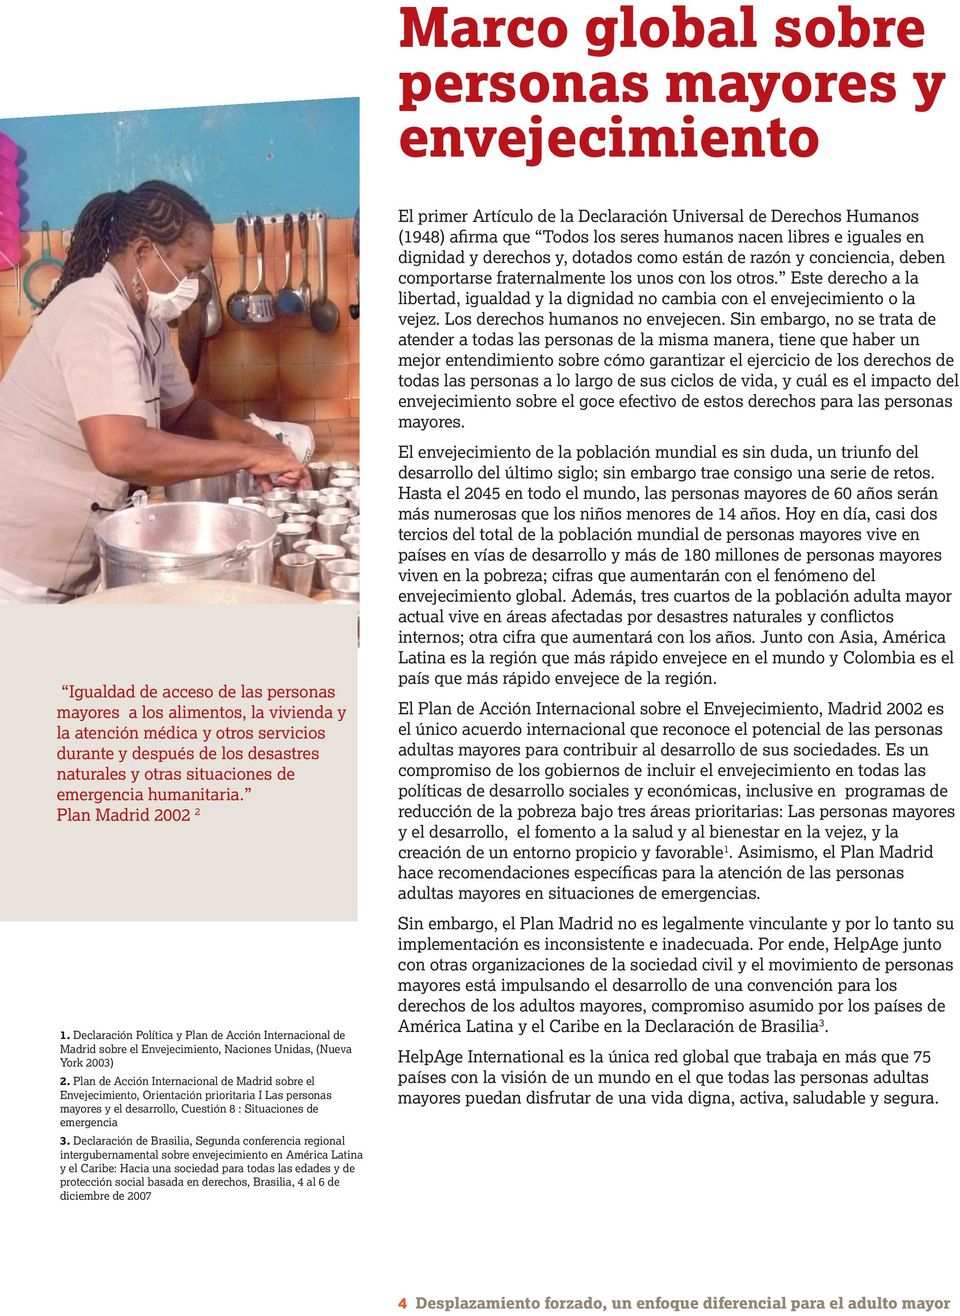 Declaración Política y Plan de Acción Internacional de Madrid sobre el Envejecimiento, Naciones Unidas, (Nueva York 2003) 2.